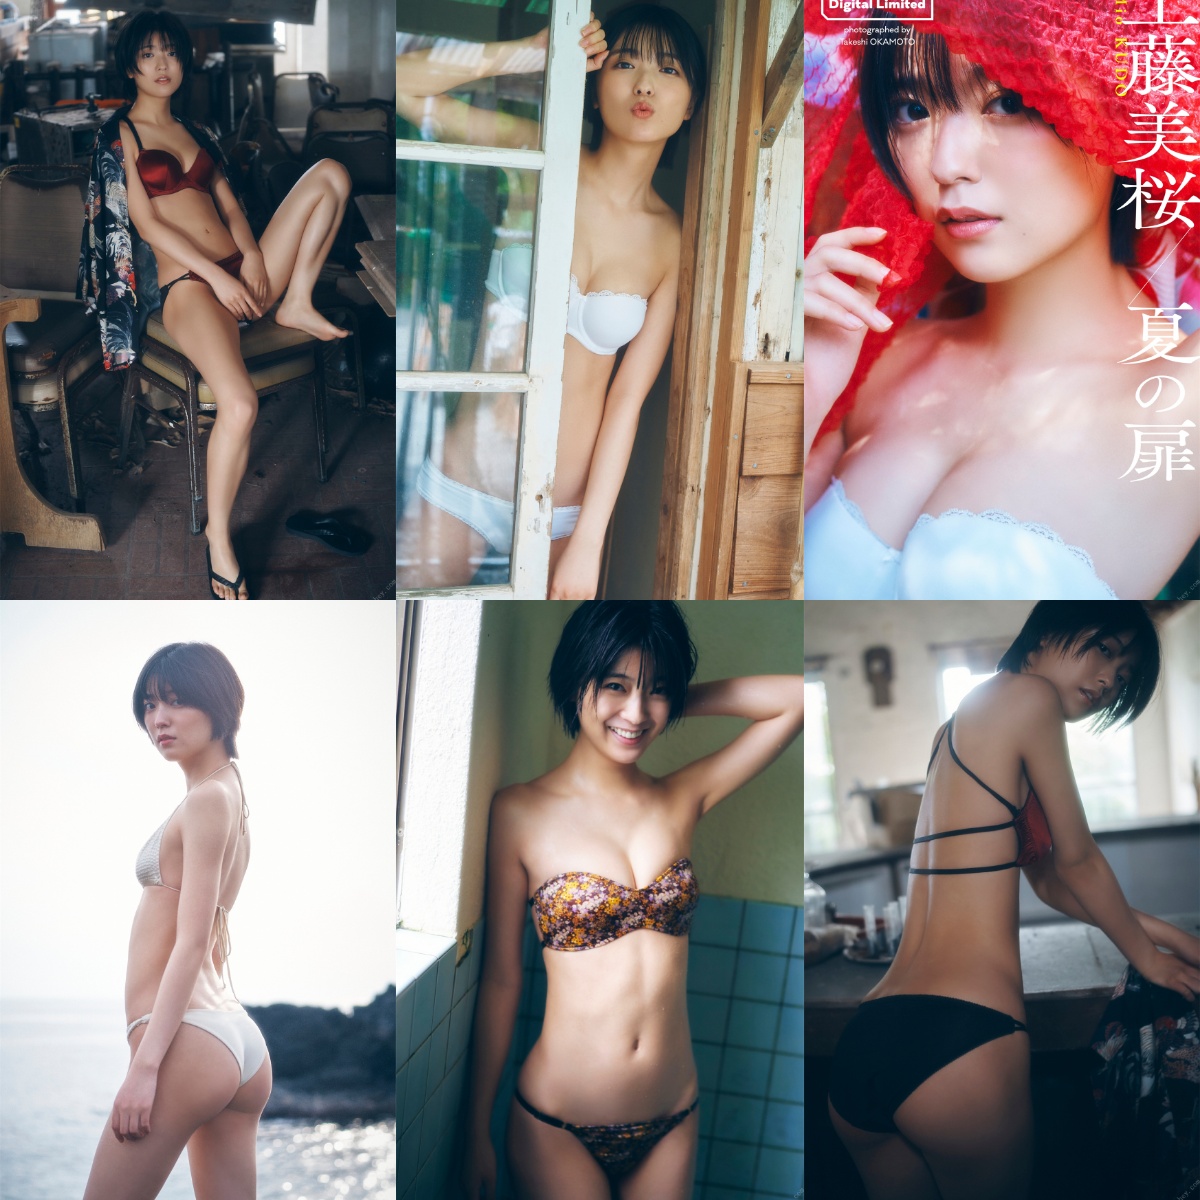 [Digital Limited] Mio Kudo 工藤美桜 & Summer door 夏の扉 (2022-06-27) - Girlsdelta